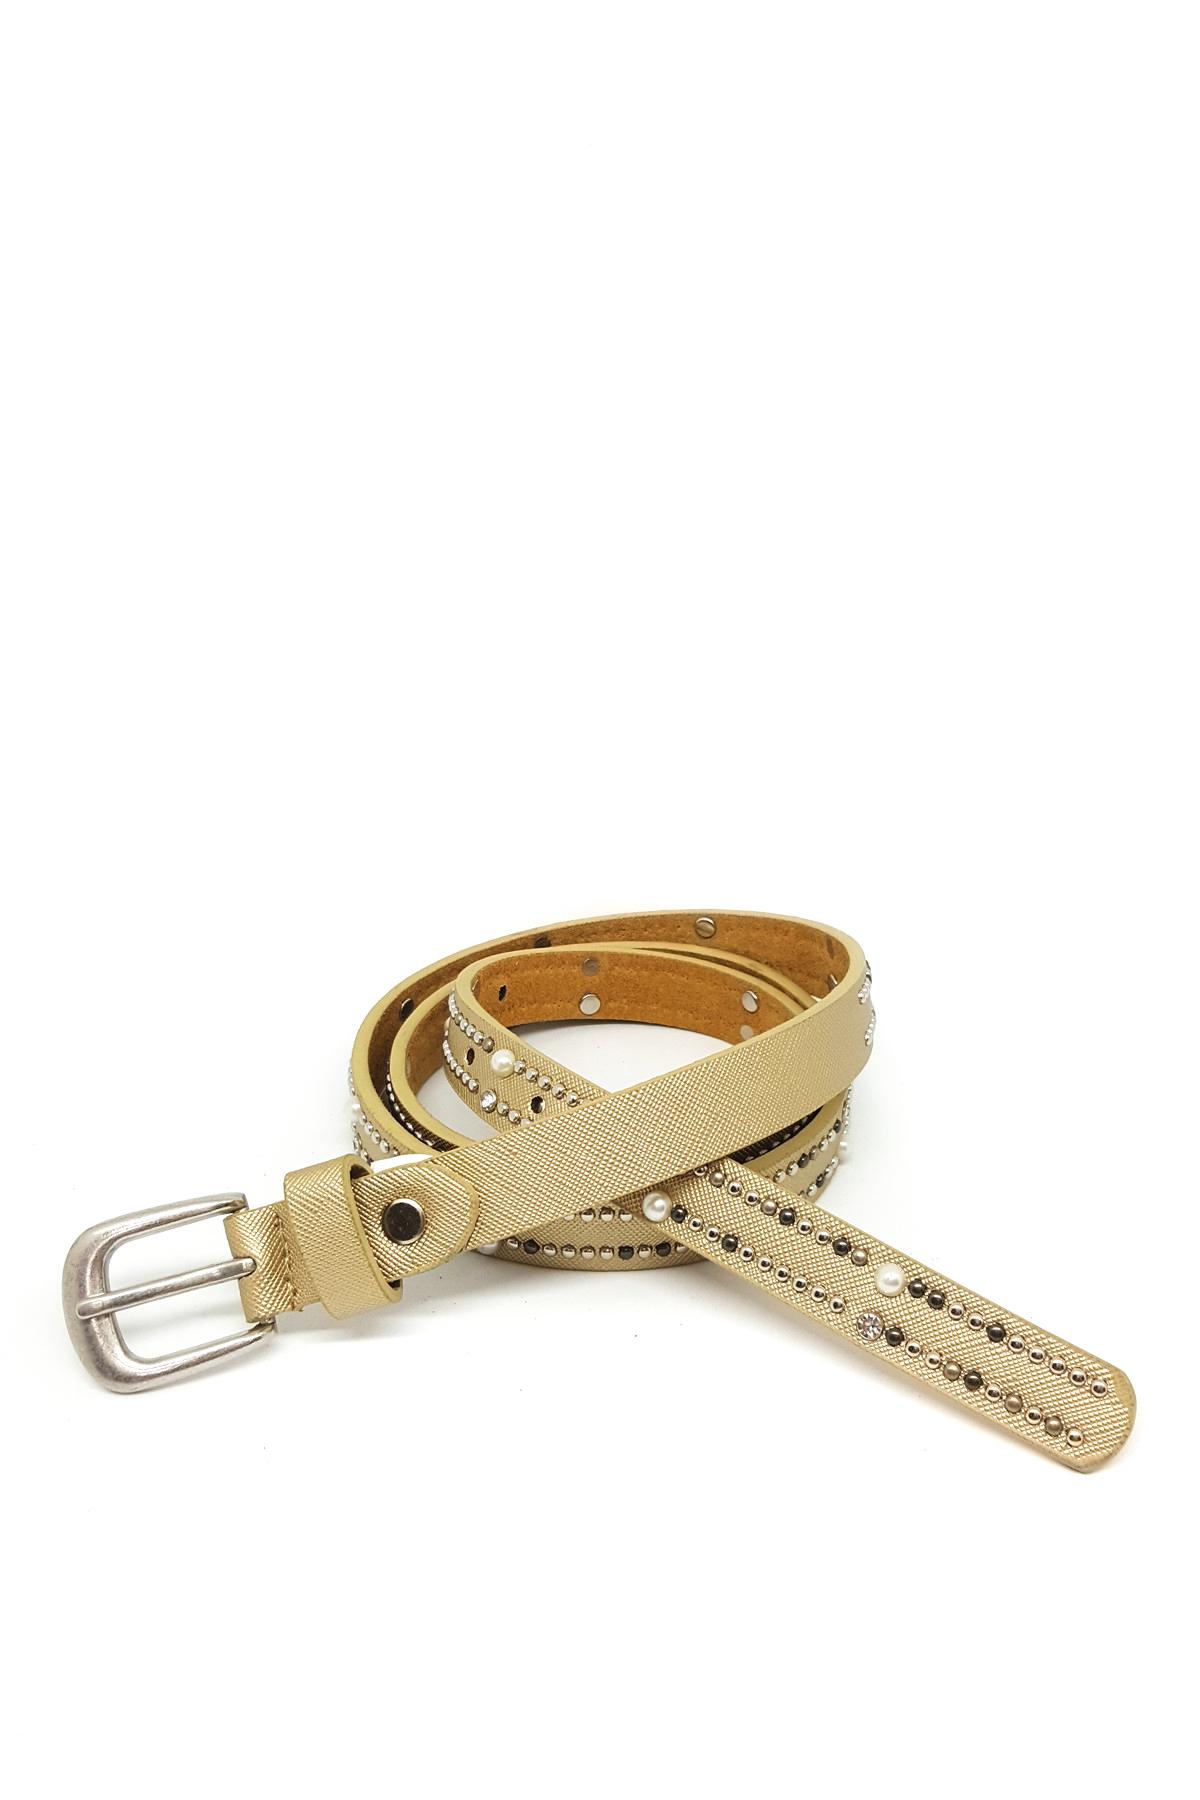 Belts Accessories Gold BEST ANGEL SA1655 #c Efashion Paris